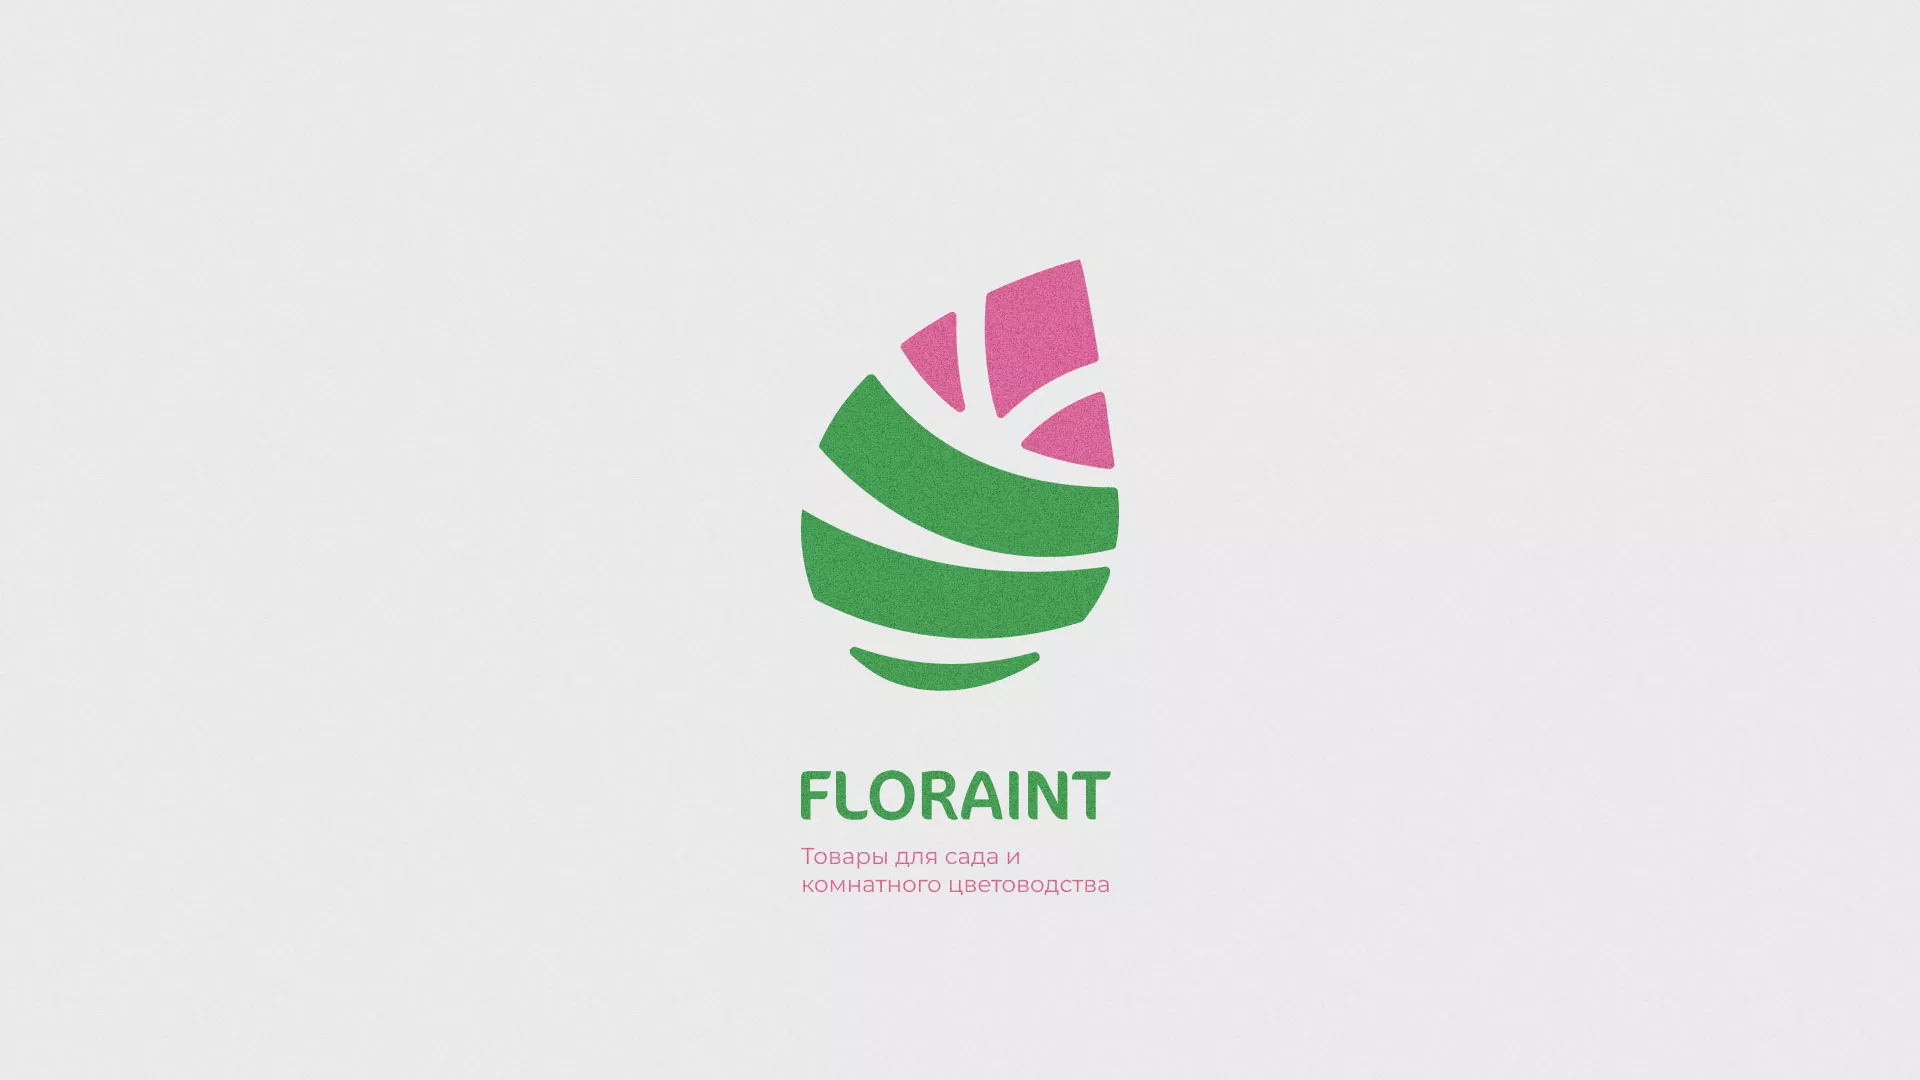 Разработка оформления профиля Instagram для магазина «Floraint» в Дмитровске